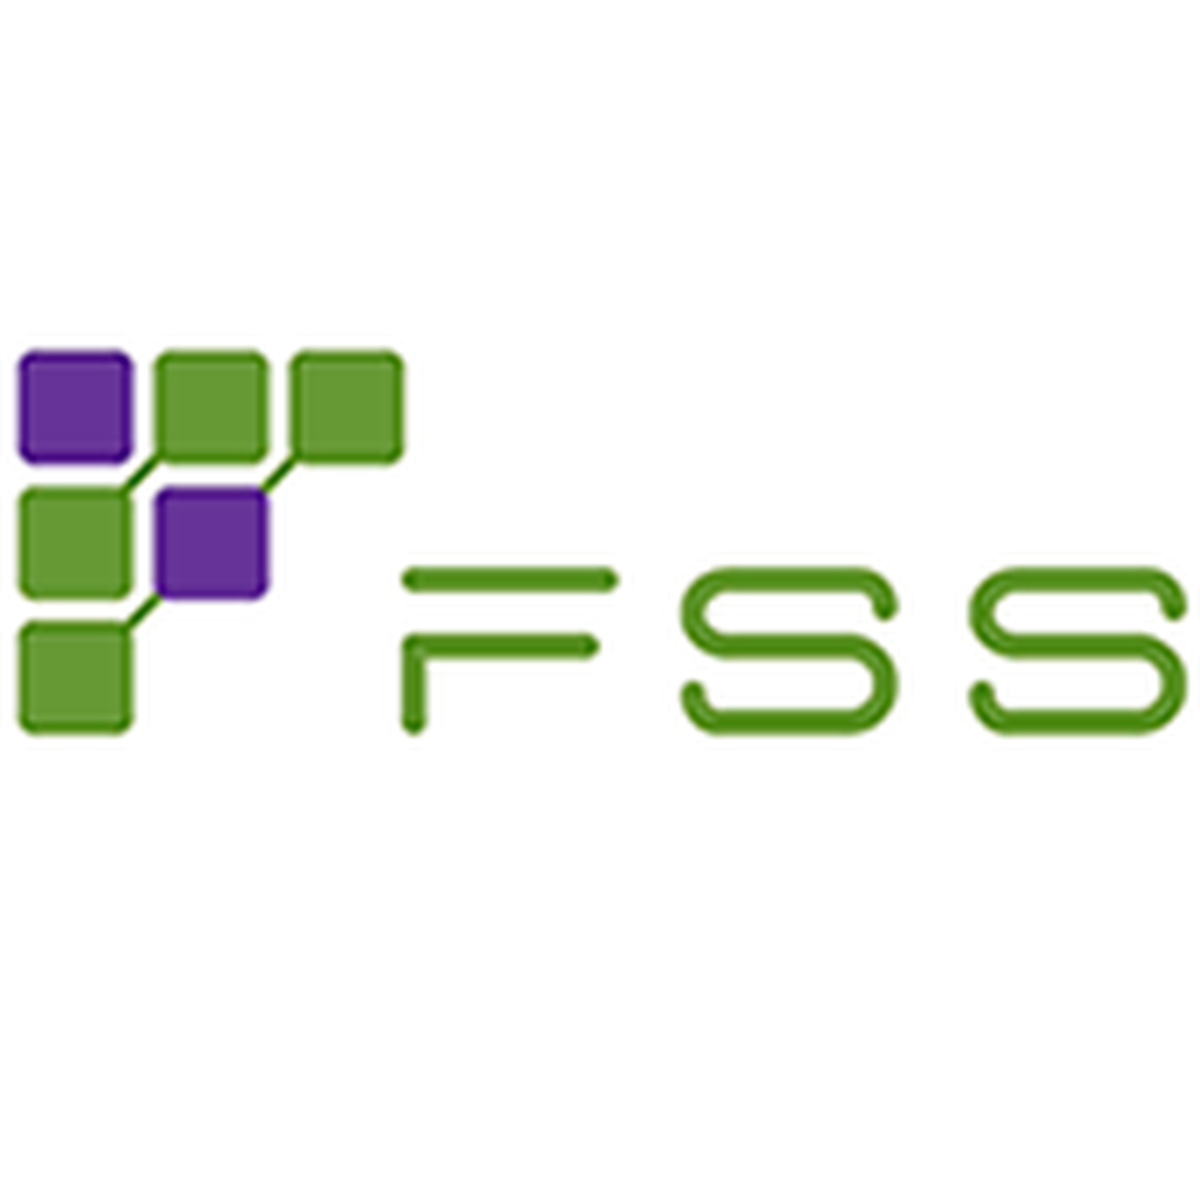 Fss. FSS code. FSS Air. FSS logo.